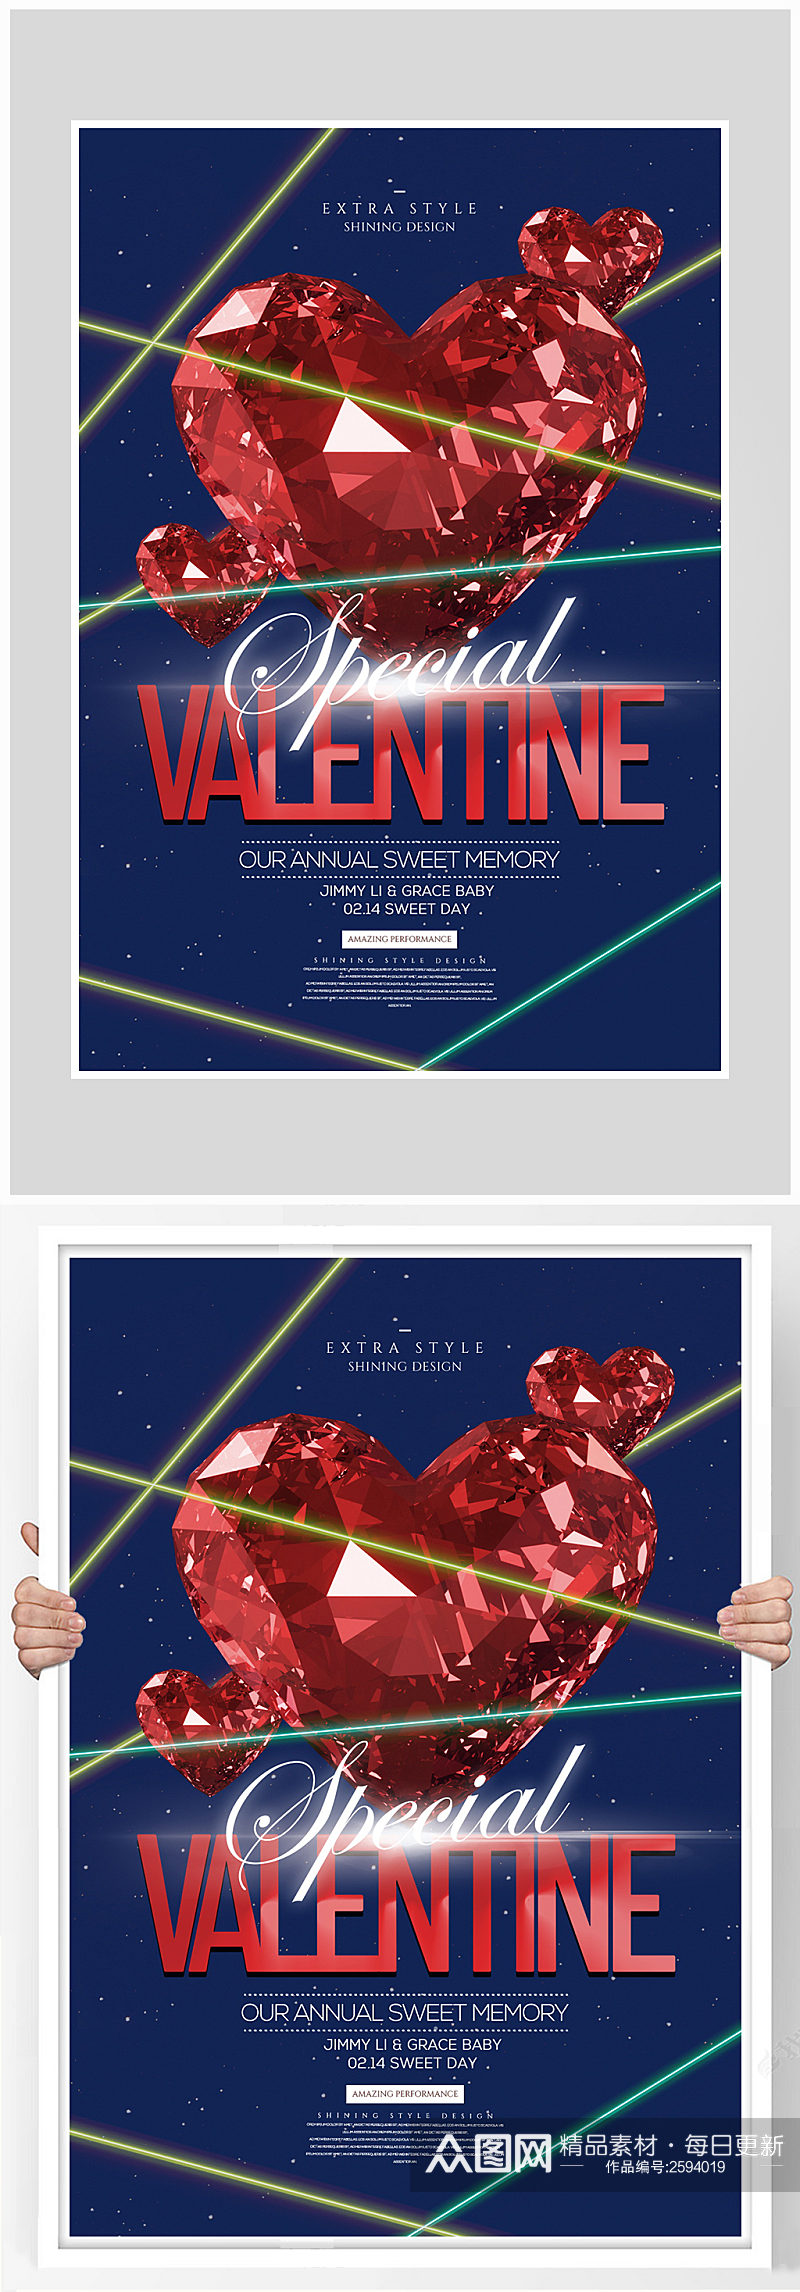 创意简约爱情情人节海报设计素材